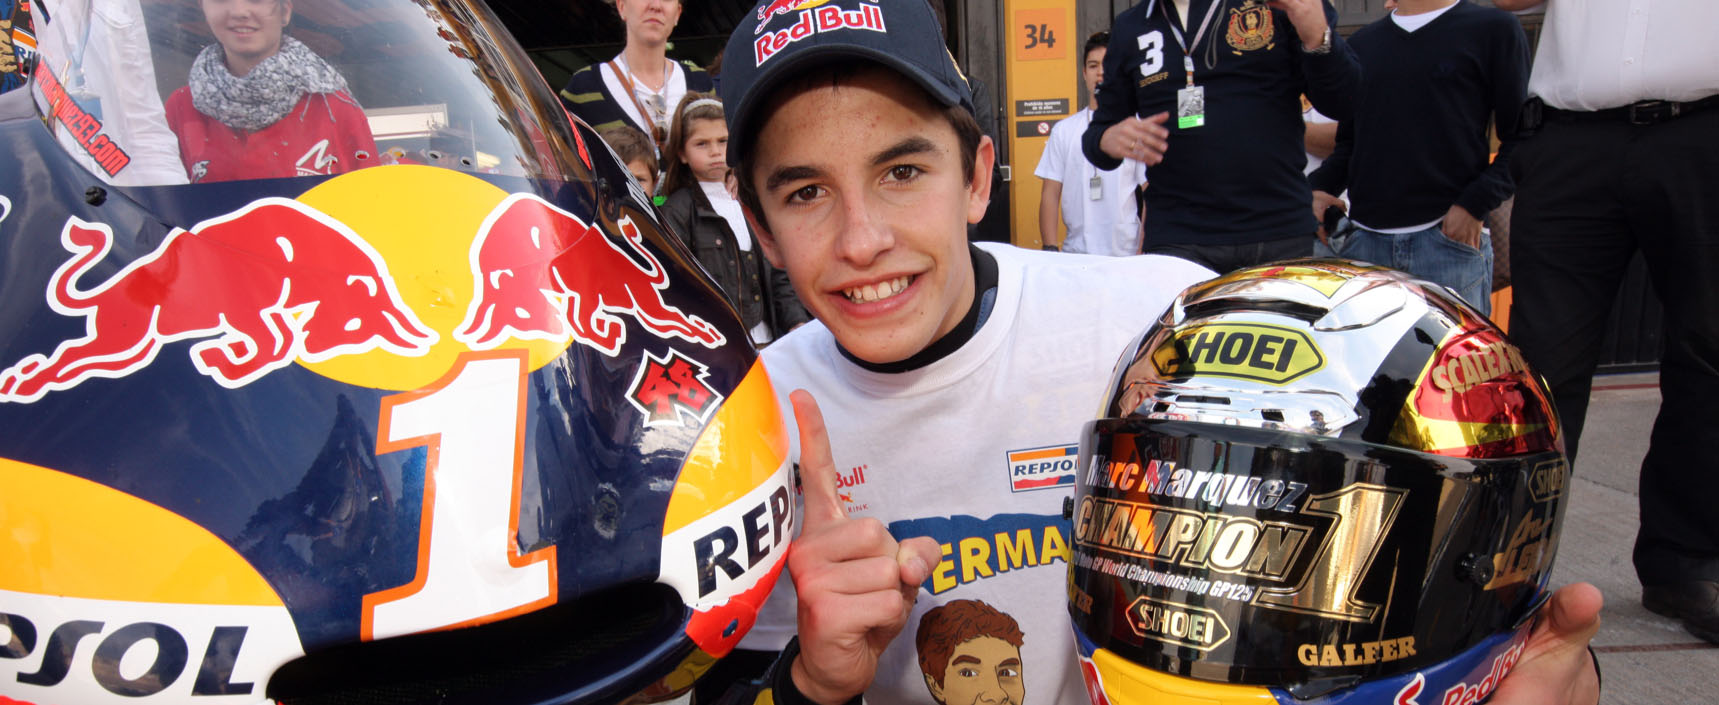 Marc Márquez se proclamó en Mugello campeón del mundo en la categoría de 125 cc